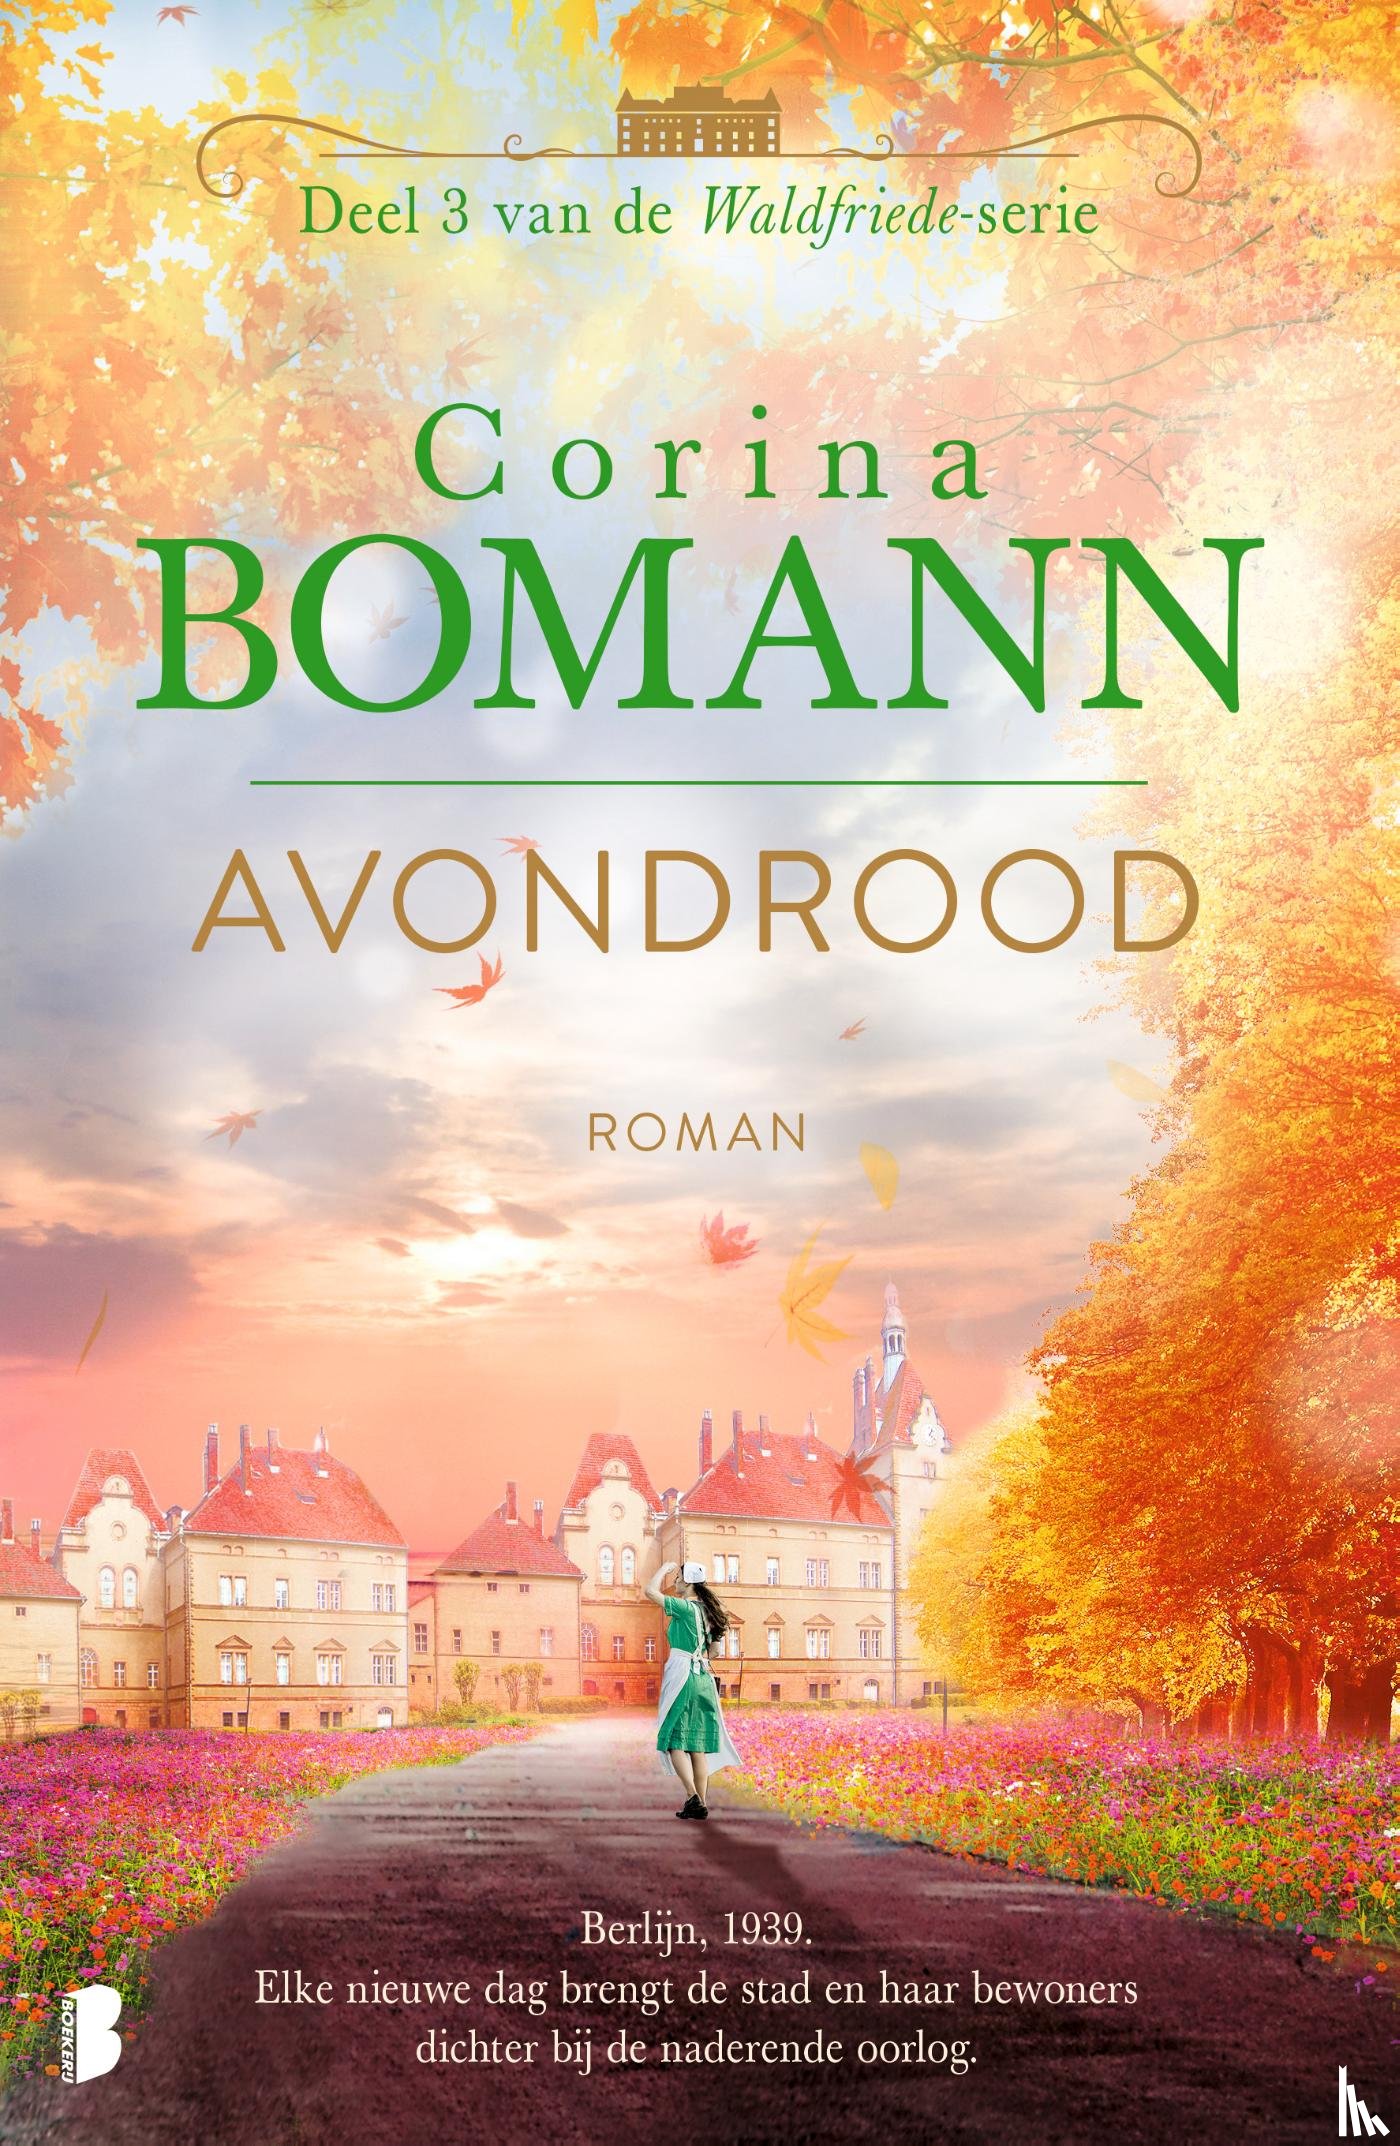 Bomann, Corina - Avondrood